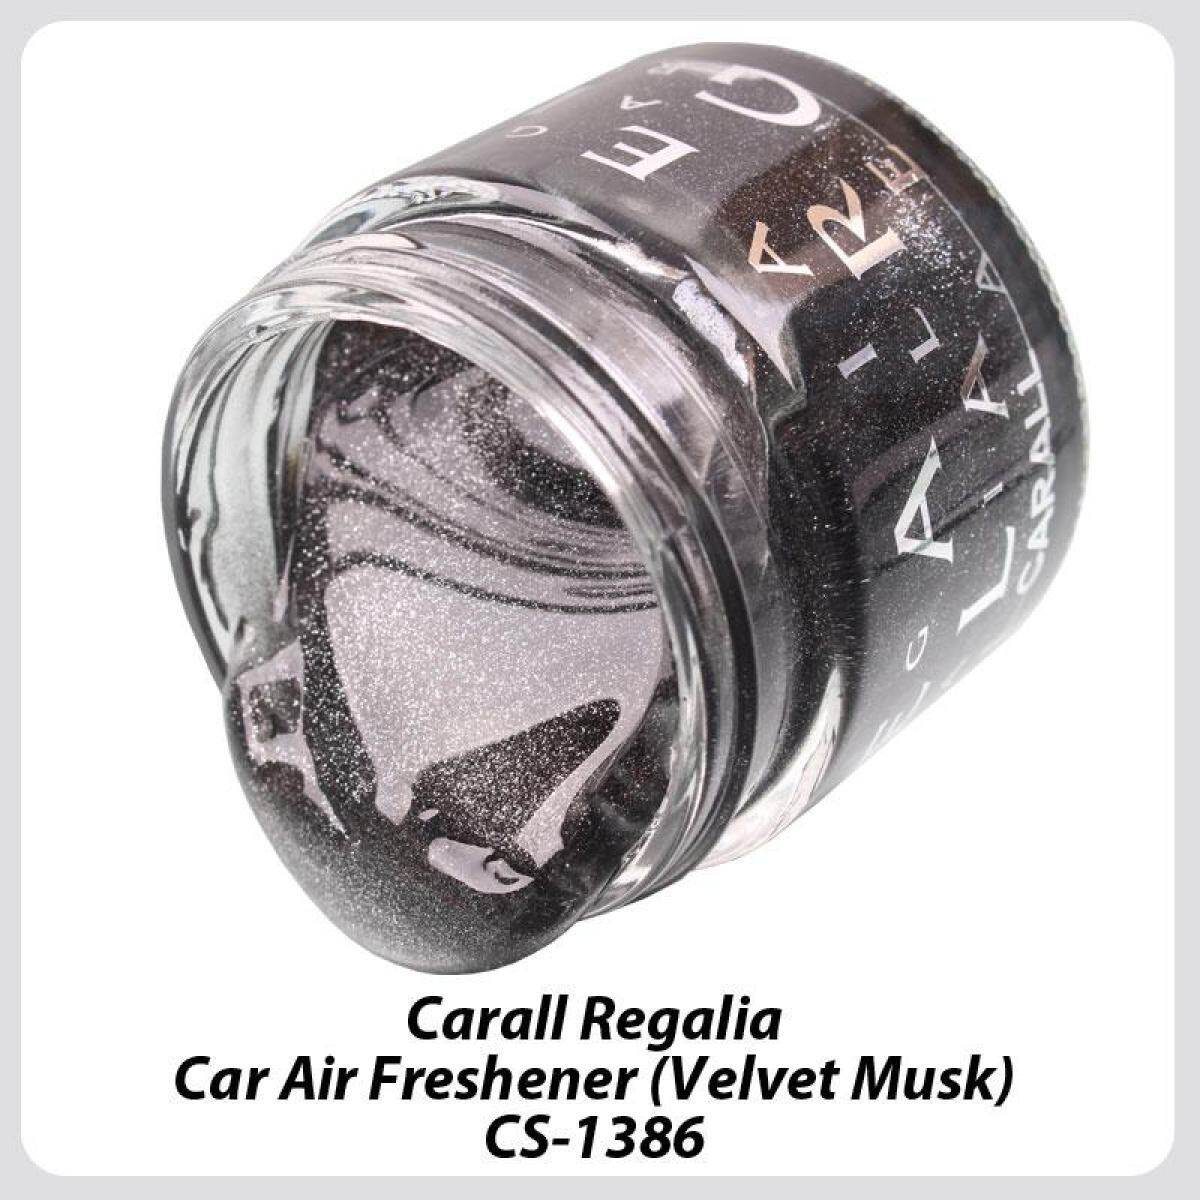 6 X Bottle Carall Regalia Enrich 1386 Velvet Musk Car Air Freshener Perfume-65ml (Genuine Made In Japan)